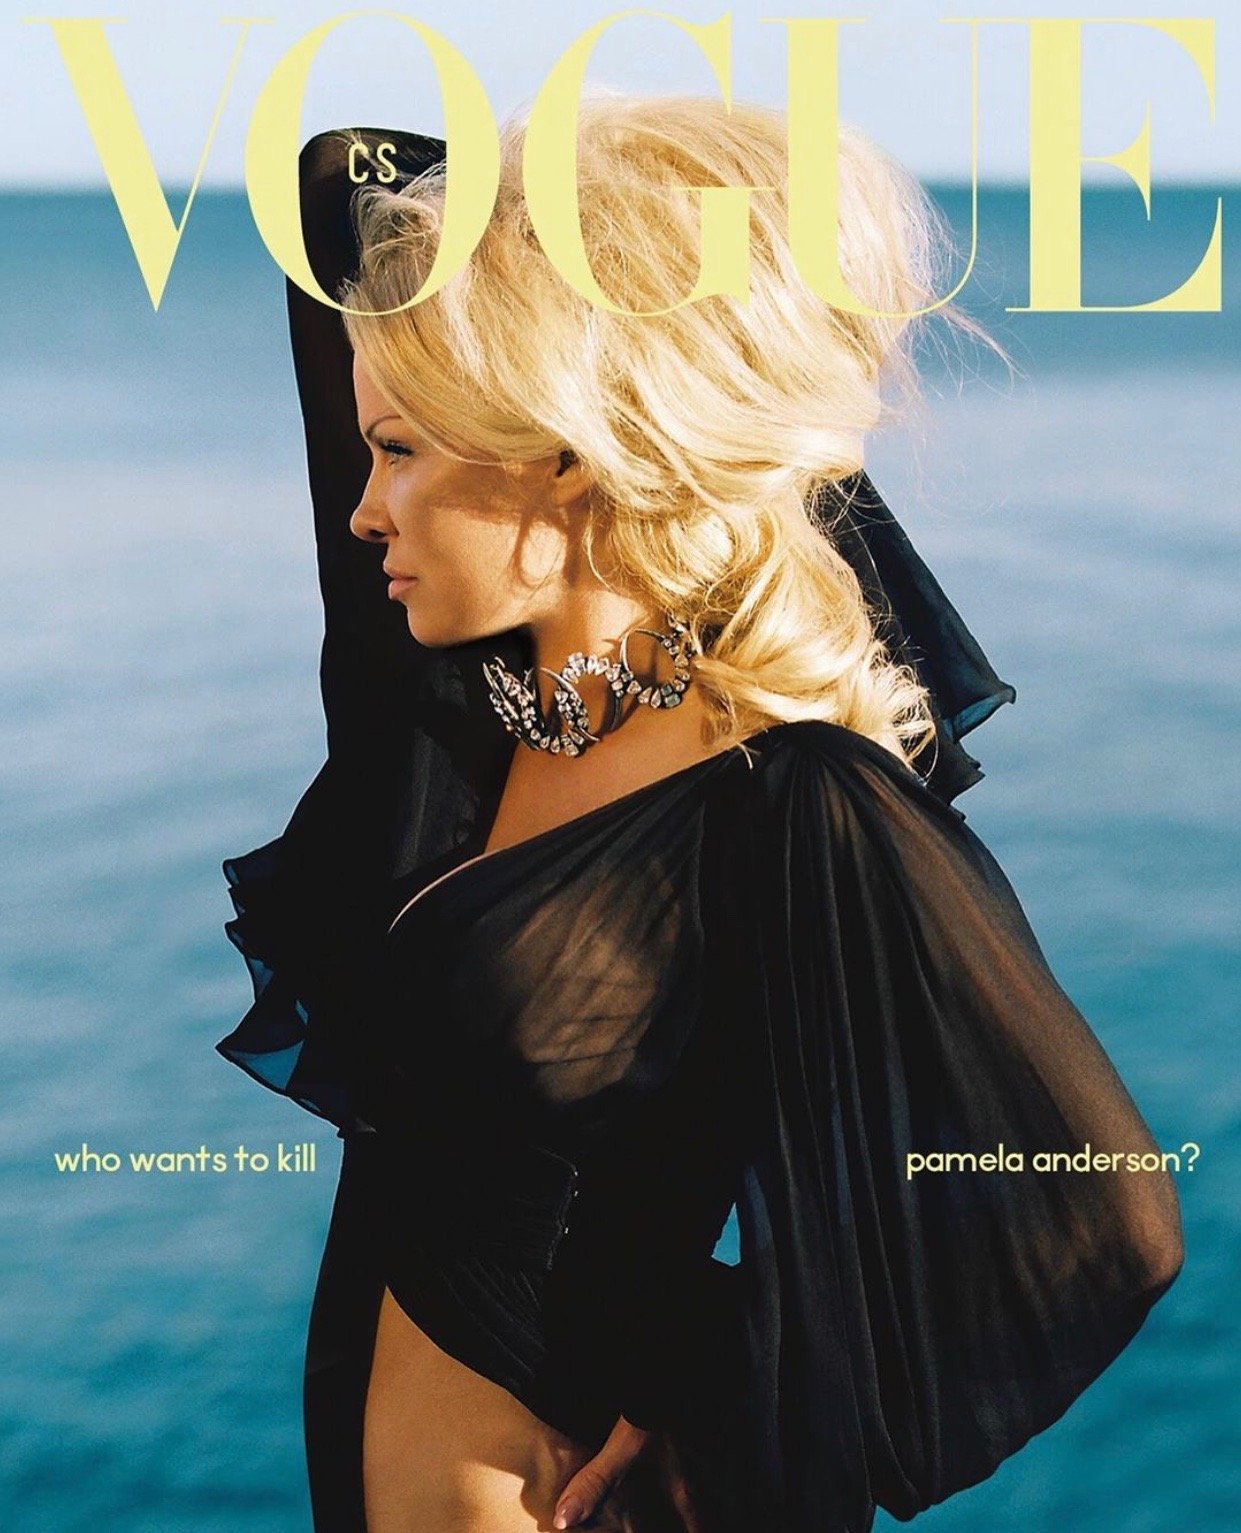 Памела Андерсон впервые появилась на обложке Vogue